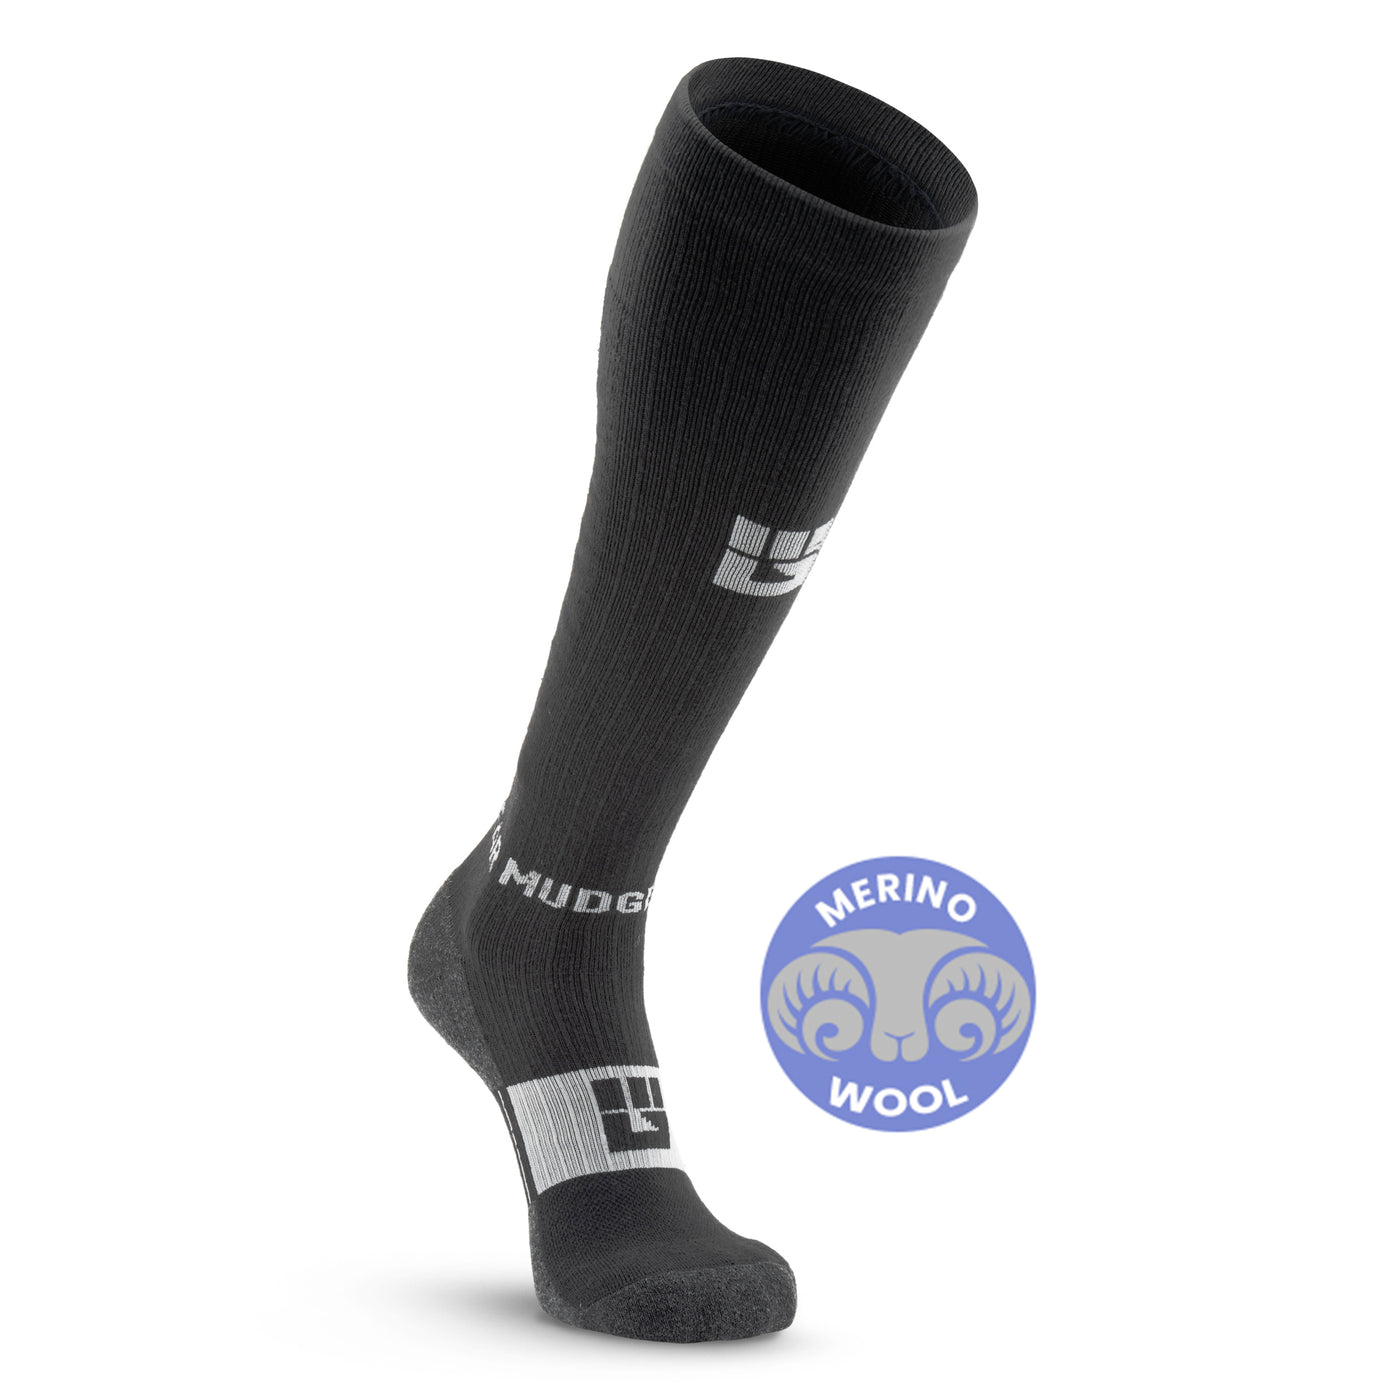 MudGear Tall Compression Merino Wool Socks - Black/Gray (1 Pair)